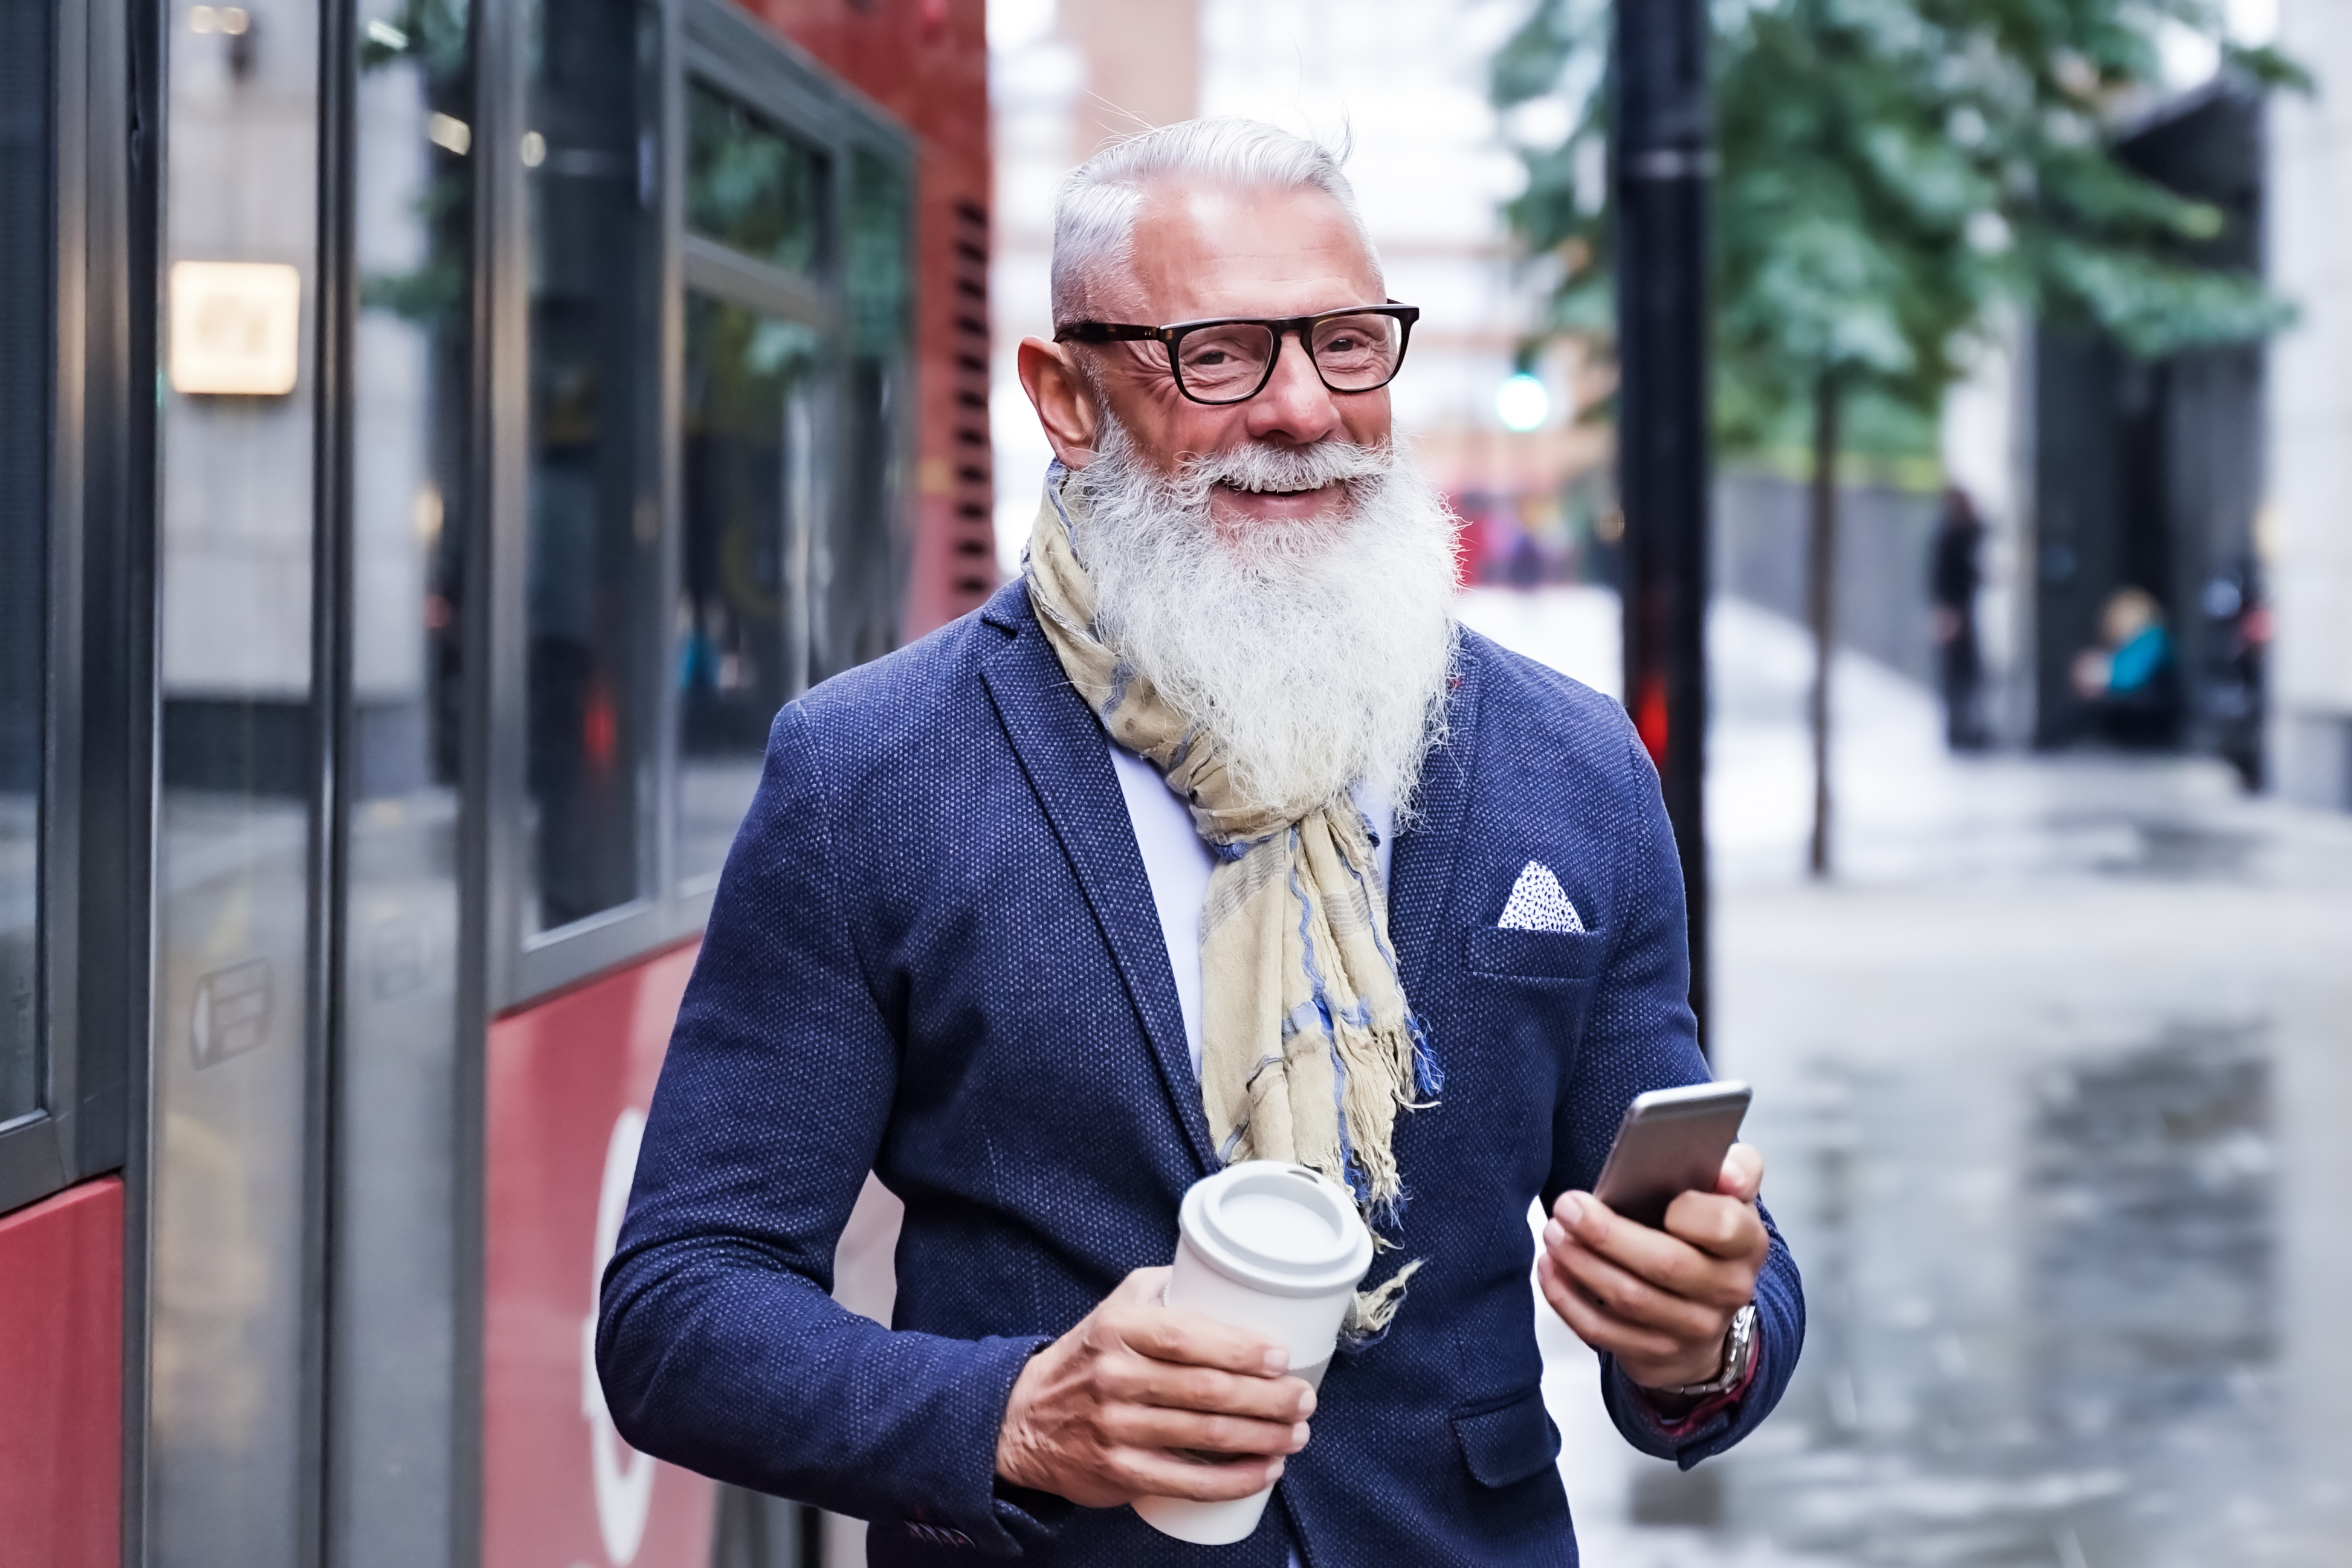 Un homme âgé marchant dans une rue | Source : Shutterstock